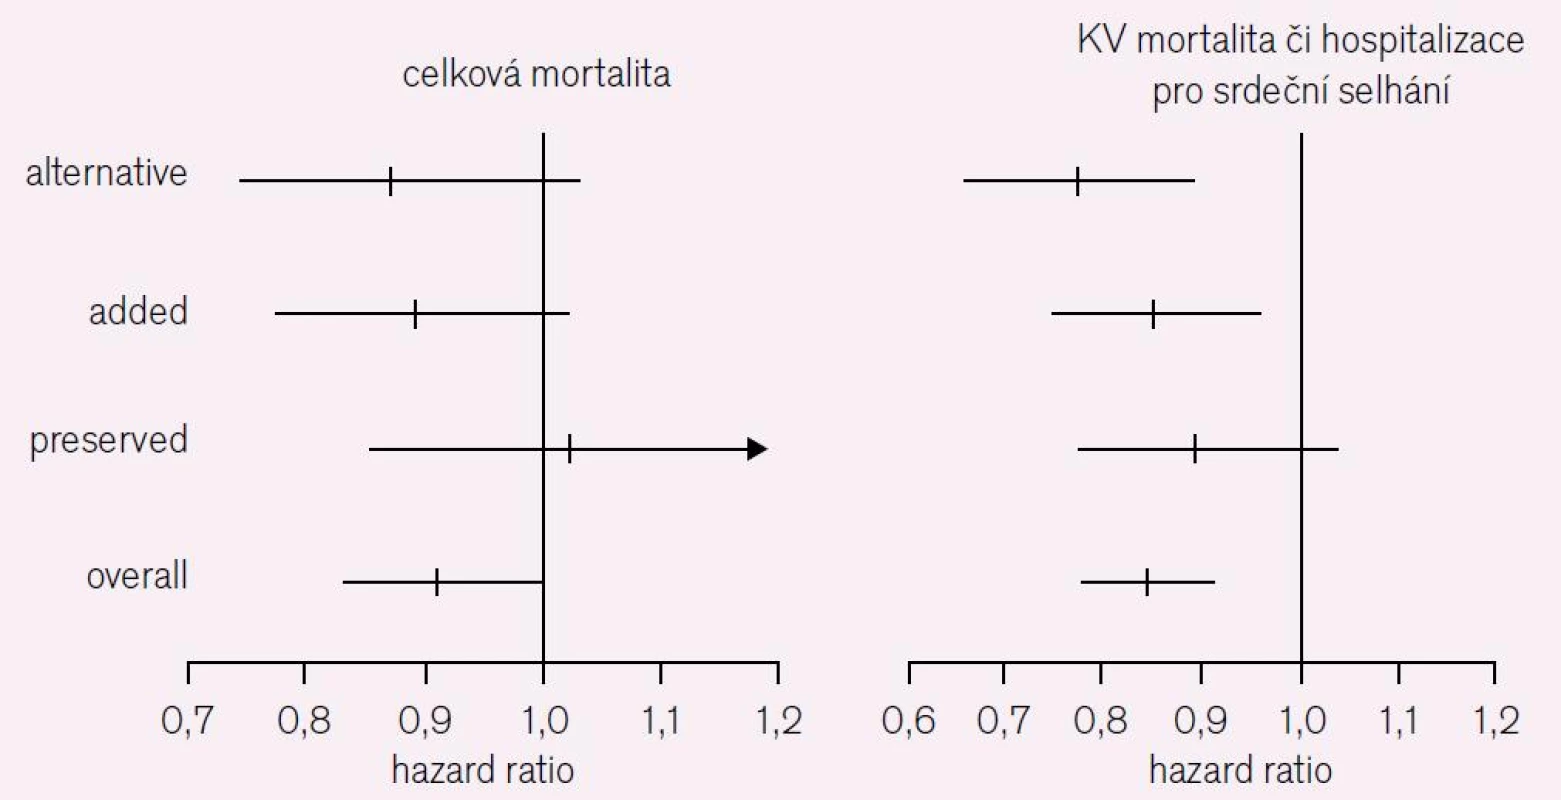 CHARM Overall [7]. Celková mortalita a KV mortalita či přijetí pro srdeční selhání.